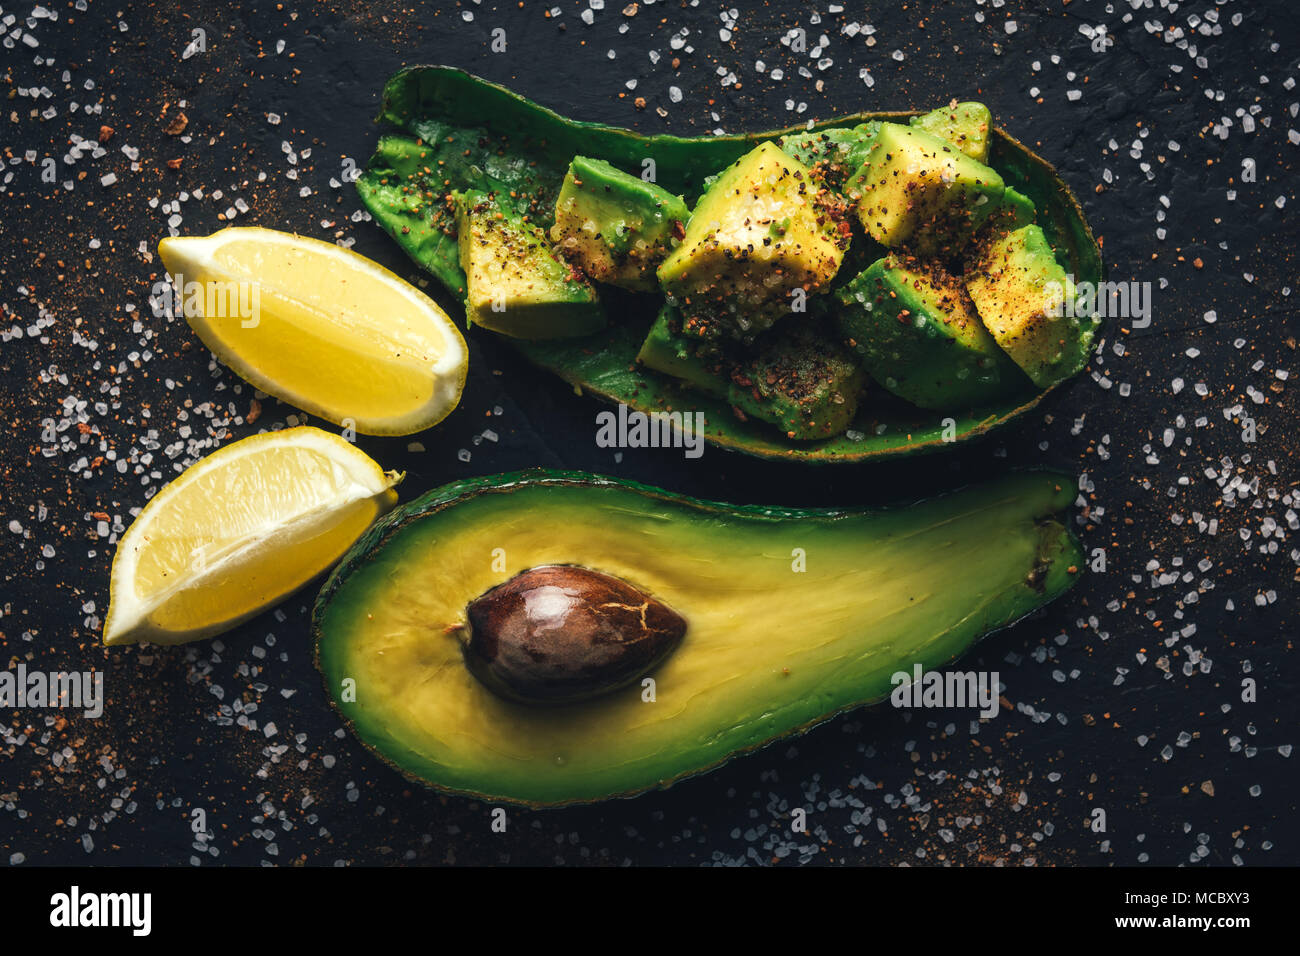 Fresco frutto di avocado su una tavola di legno Foto Stock